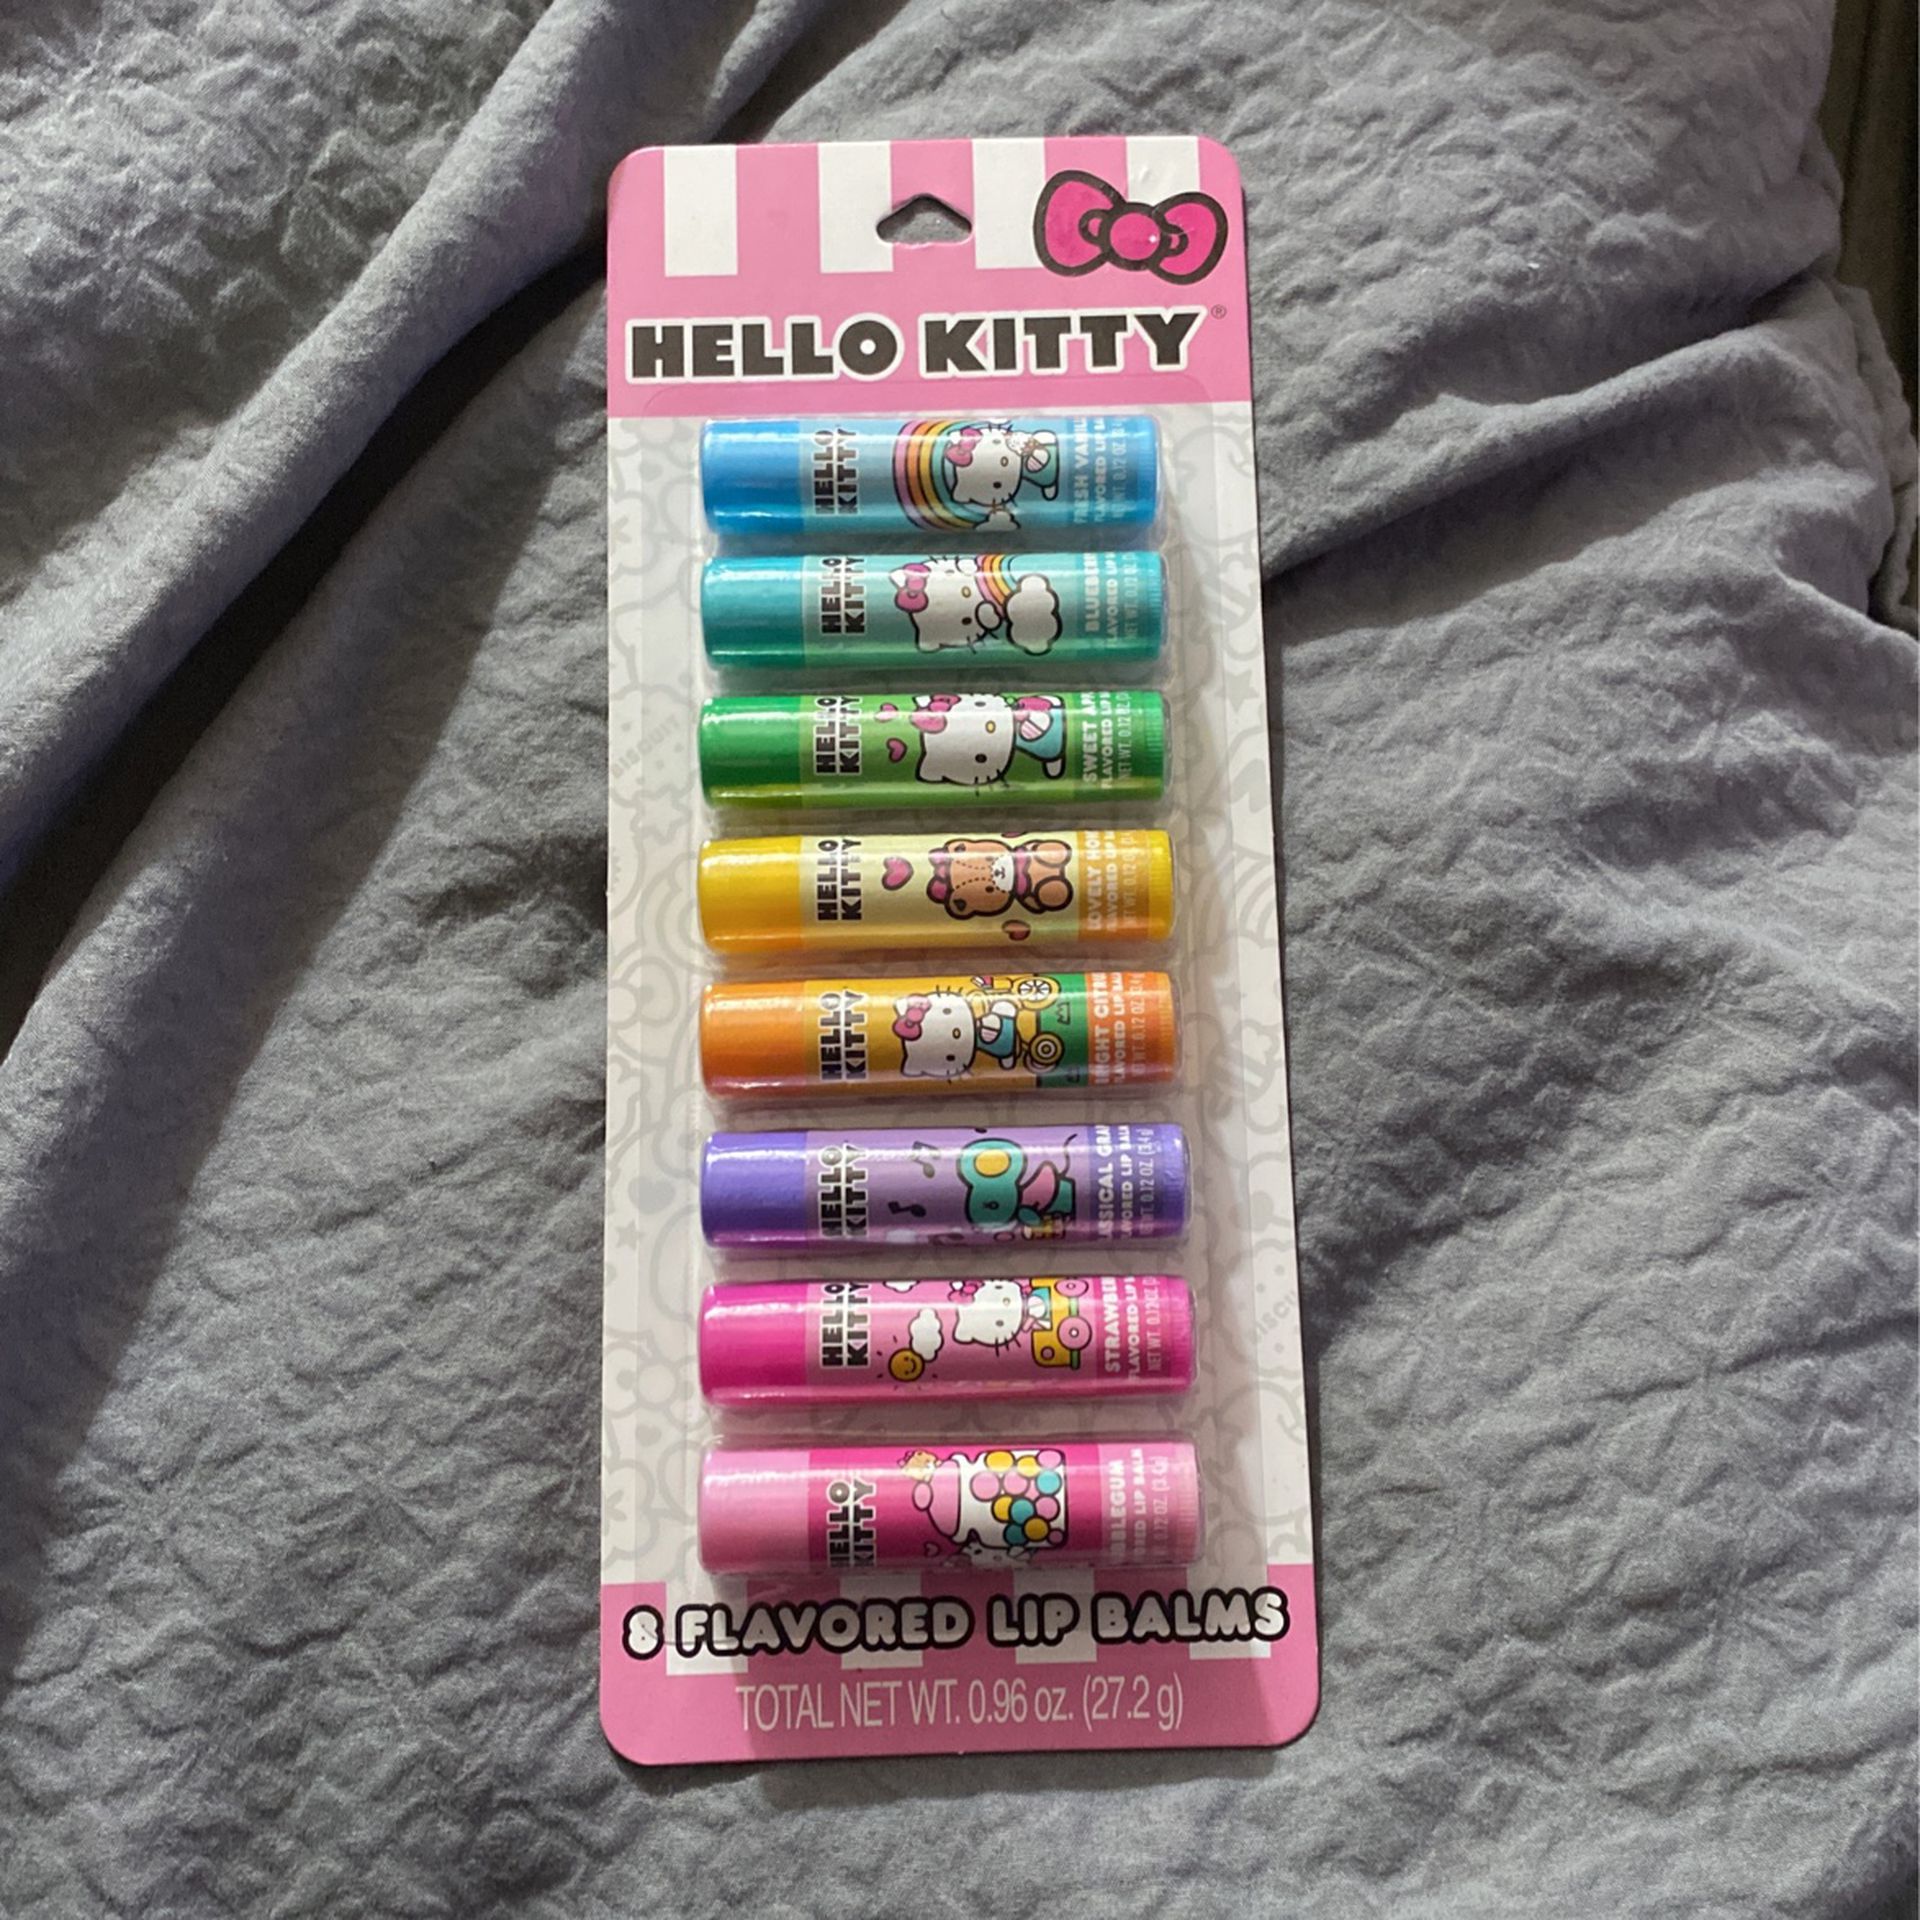 Hello Kitty Lip Balms